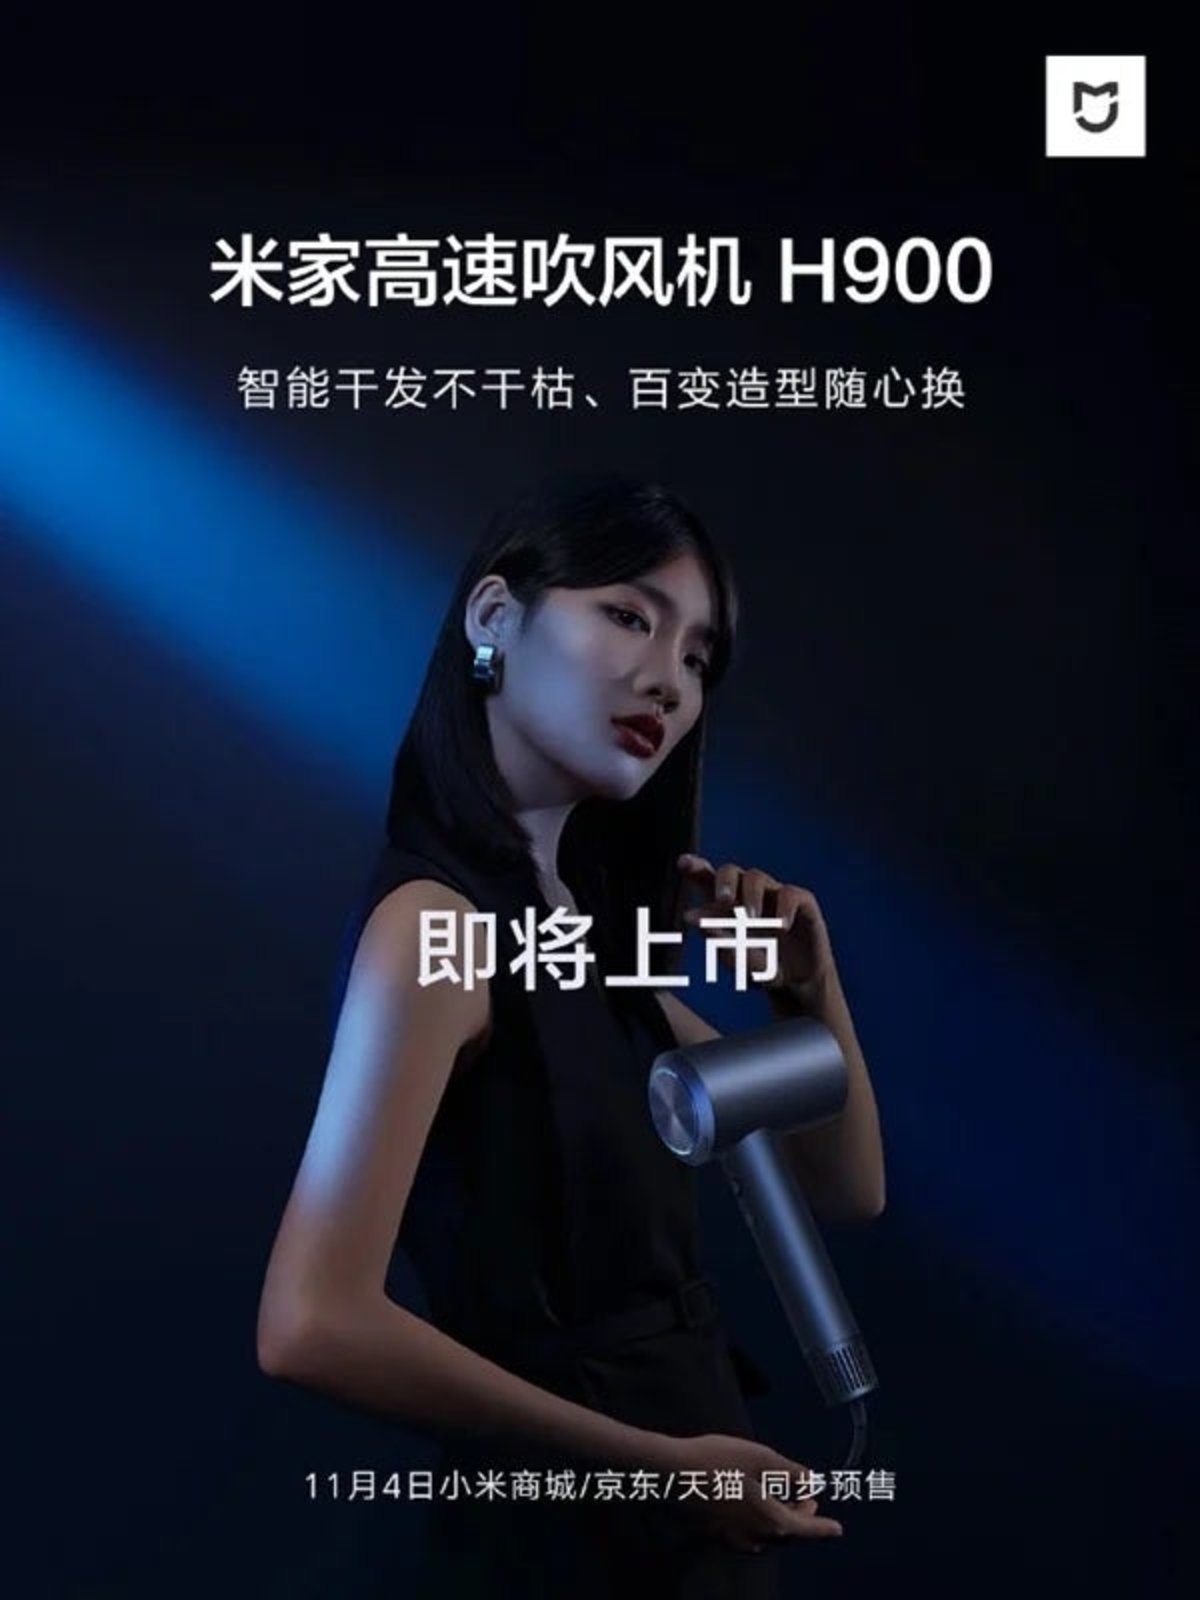 Mijia H900, el secador de pelo de Xiaomi